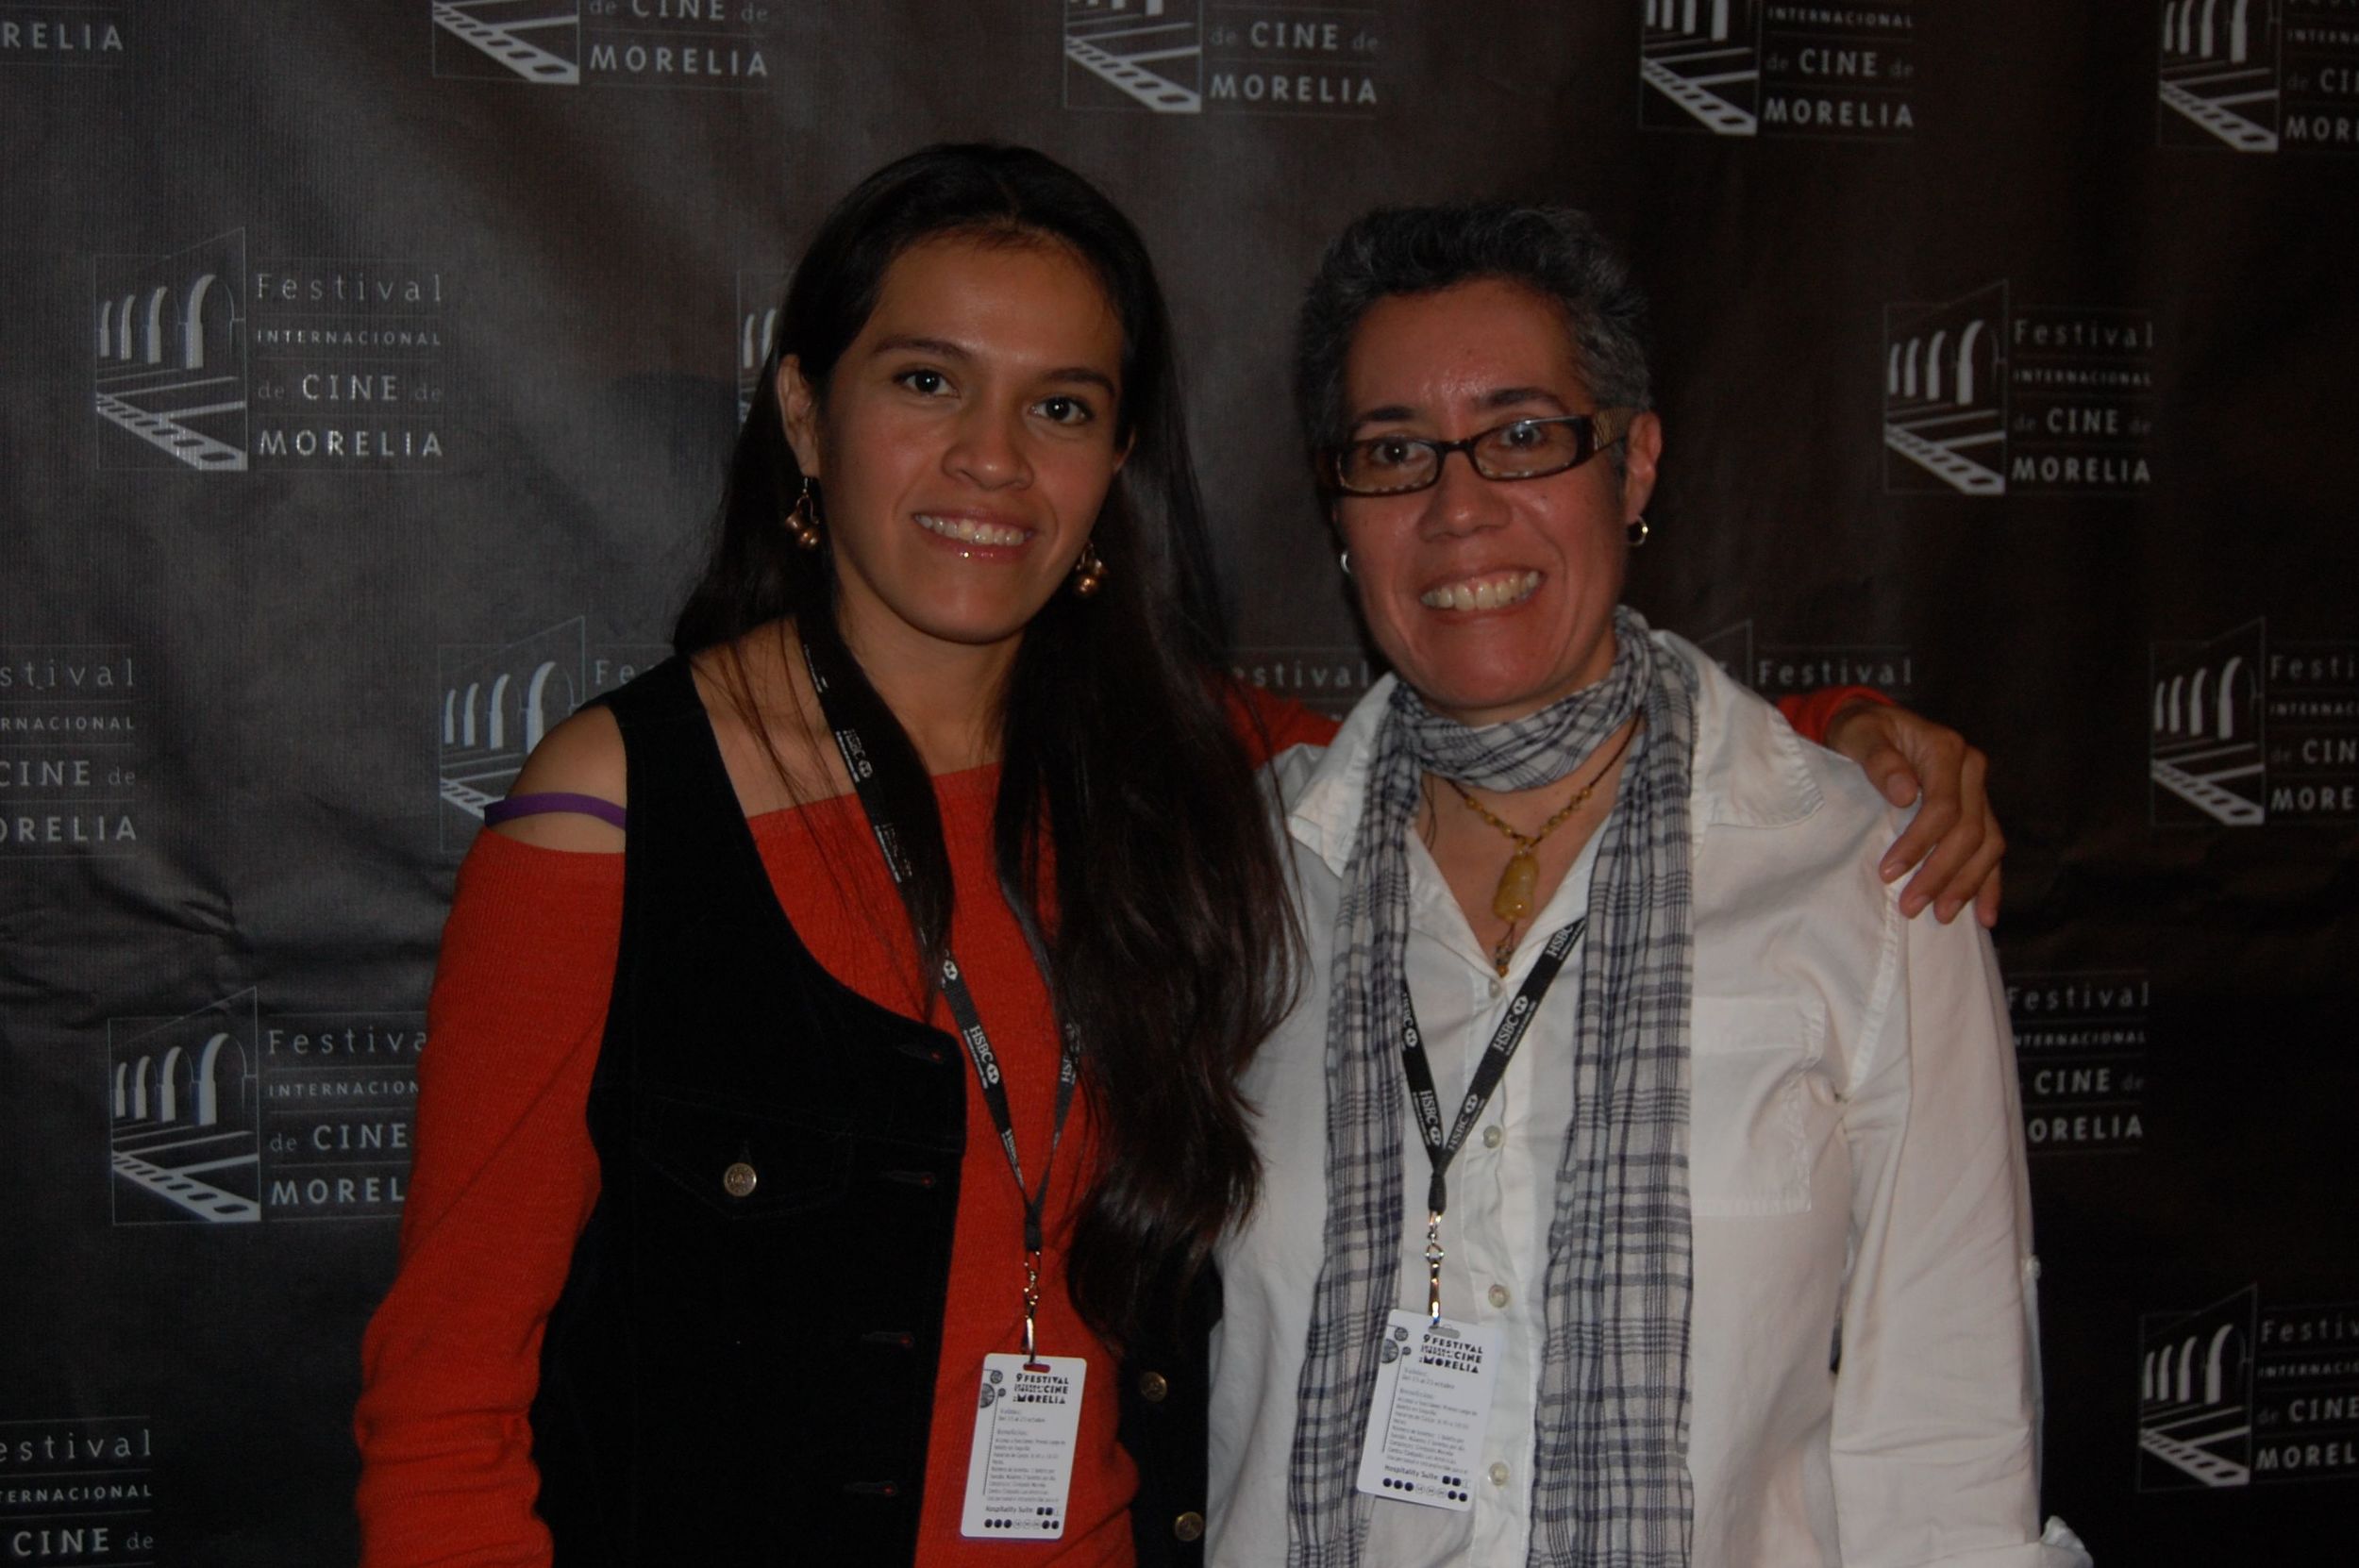  Miriam Balderas and Cristina at the Morelia International Film Festival for screening of  Despertar . 